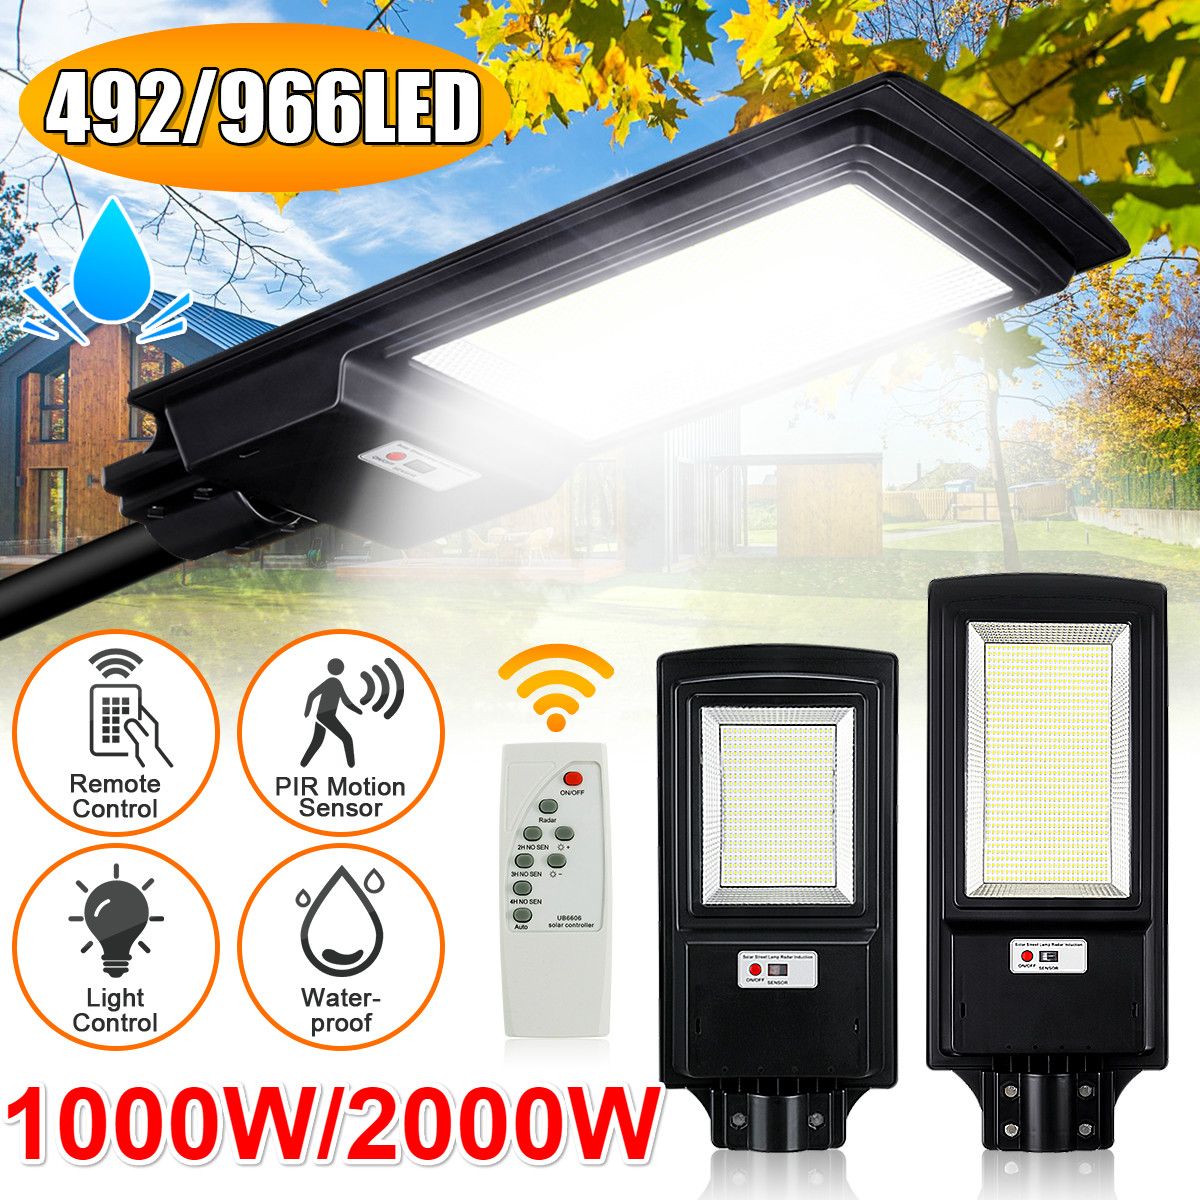 966492-LED-Solar-Street-Light-Motion-Sensor-Outdoor-Wall-LampRemote-1629138